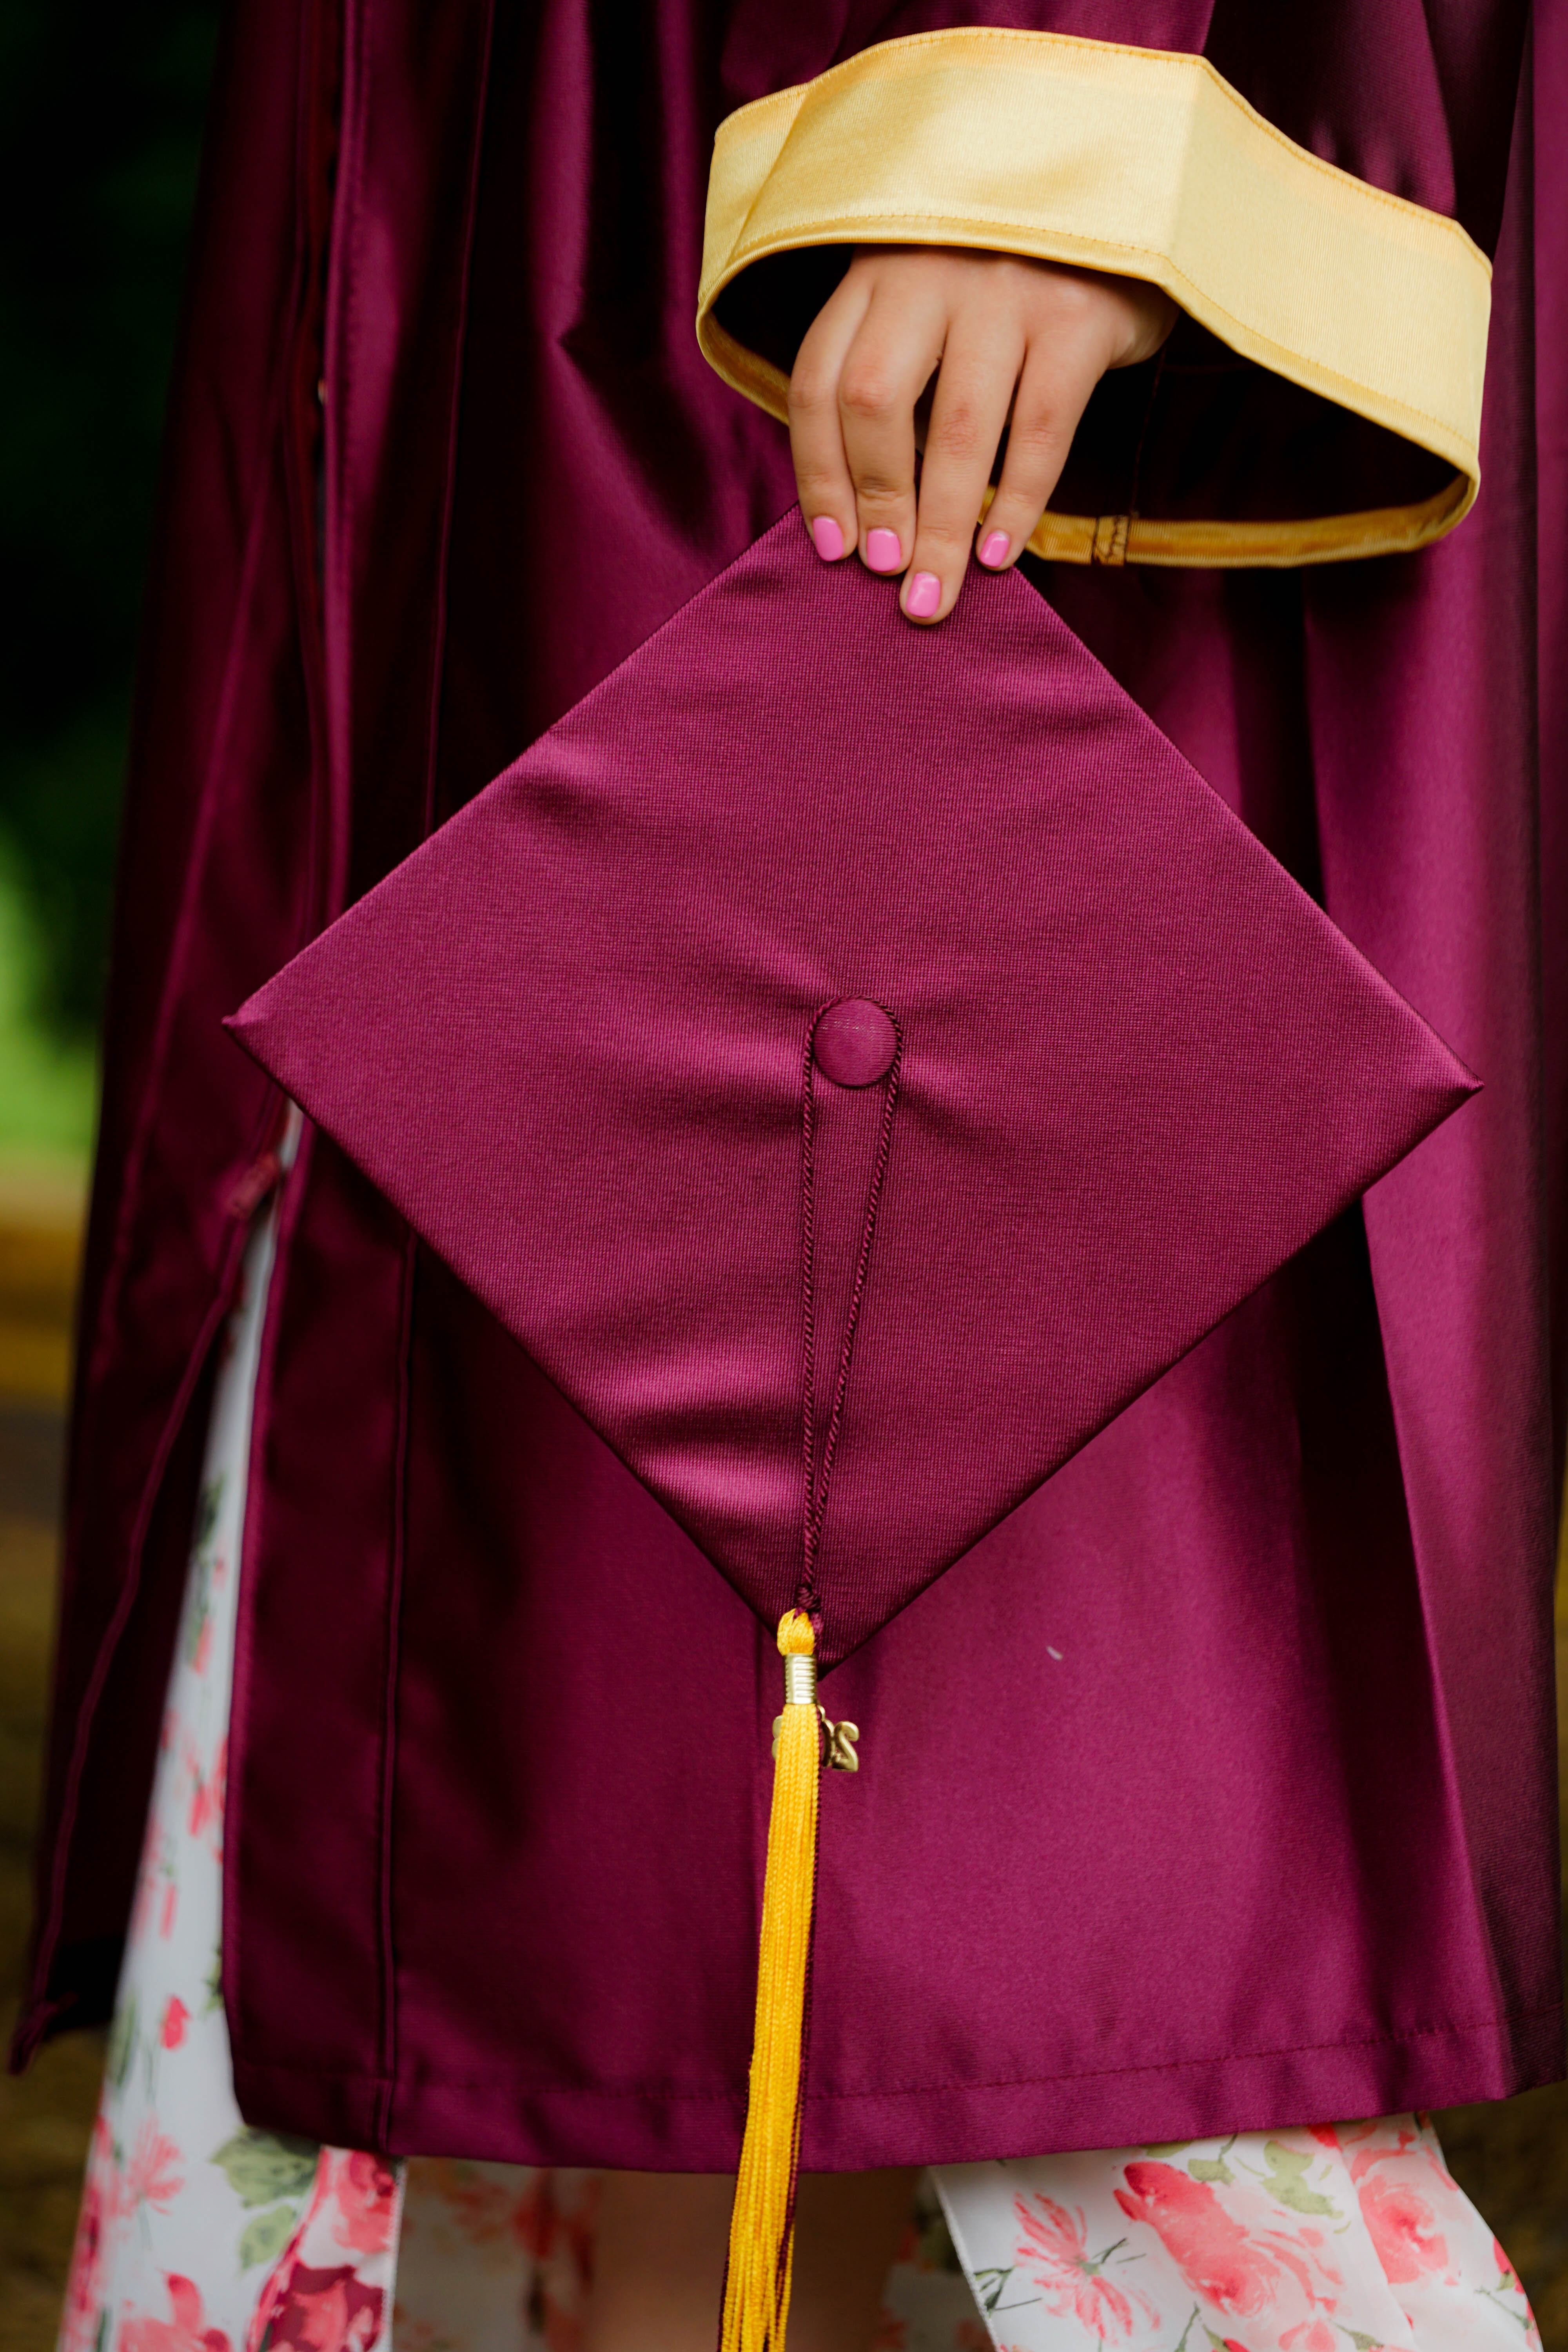 Foto de una mano sujetando un birrete de graduación